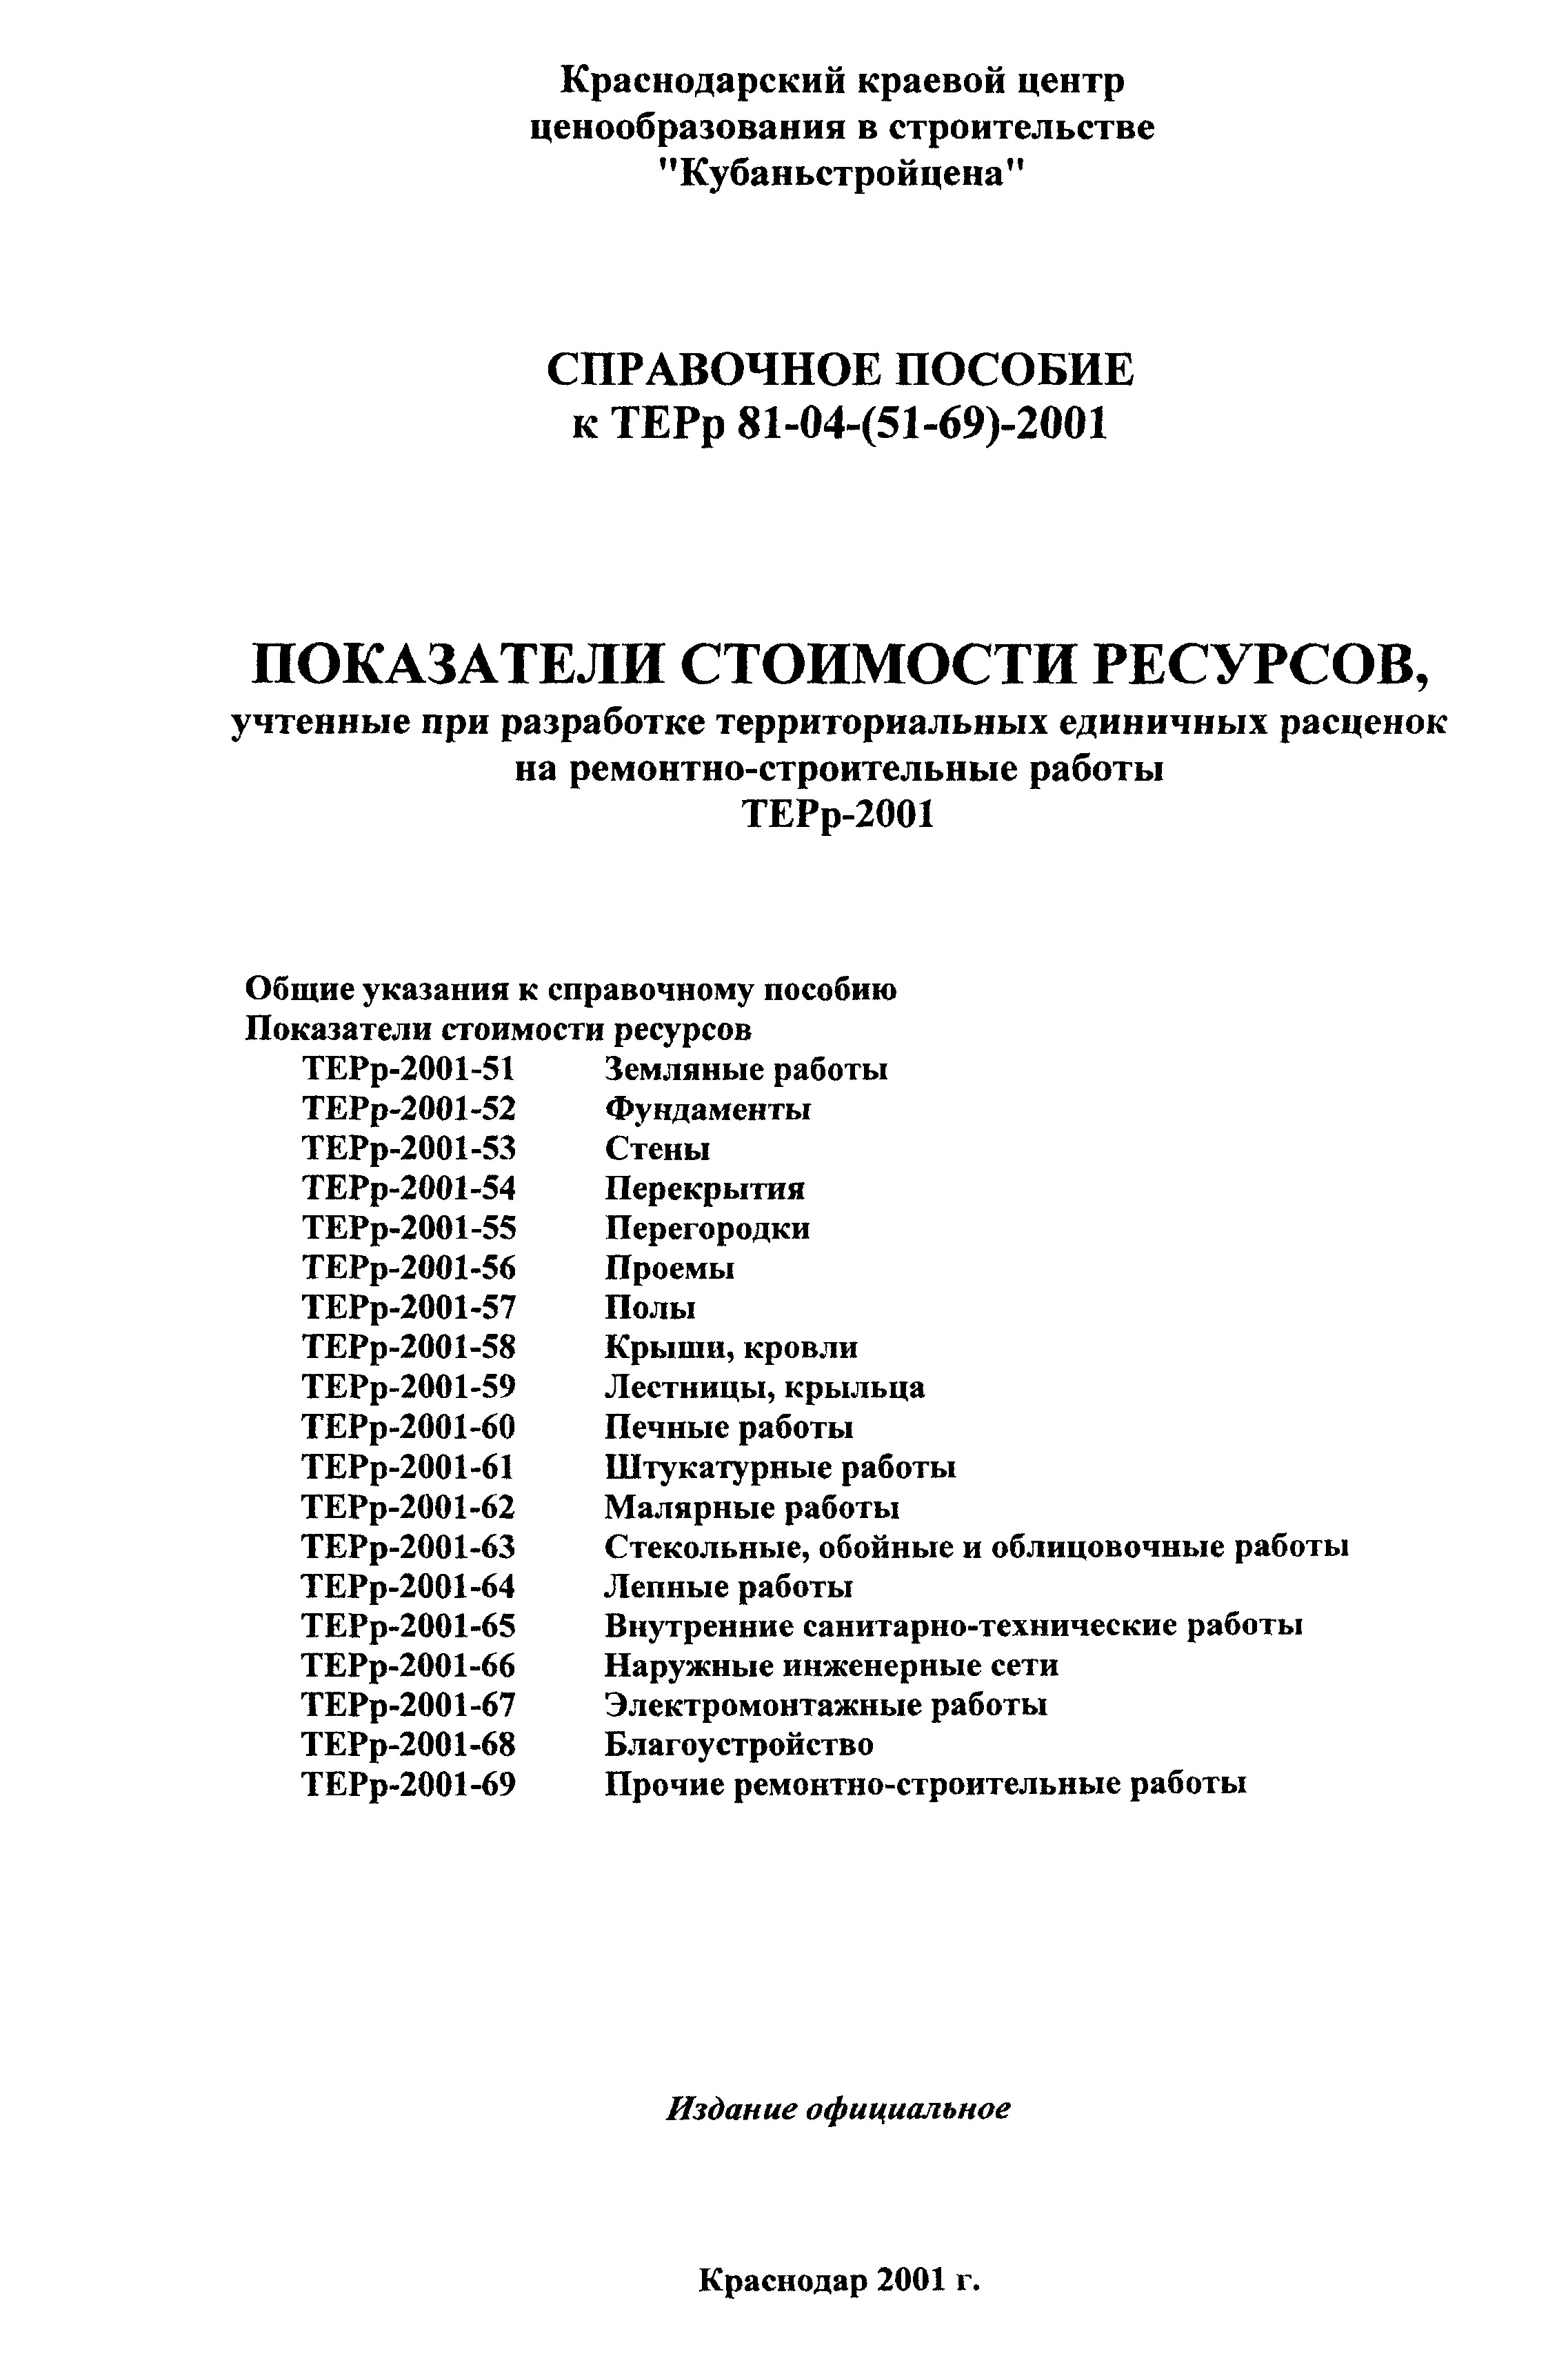 Справочное пособие к ТЕРр 81-04-55-2001